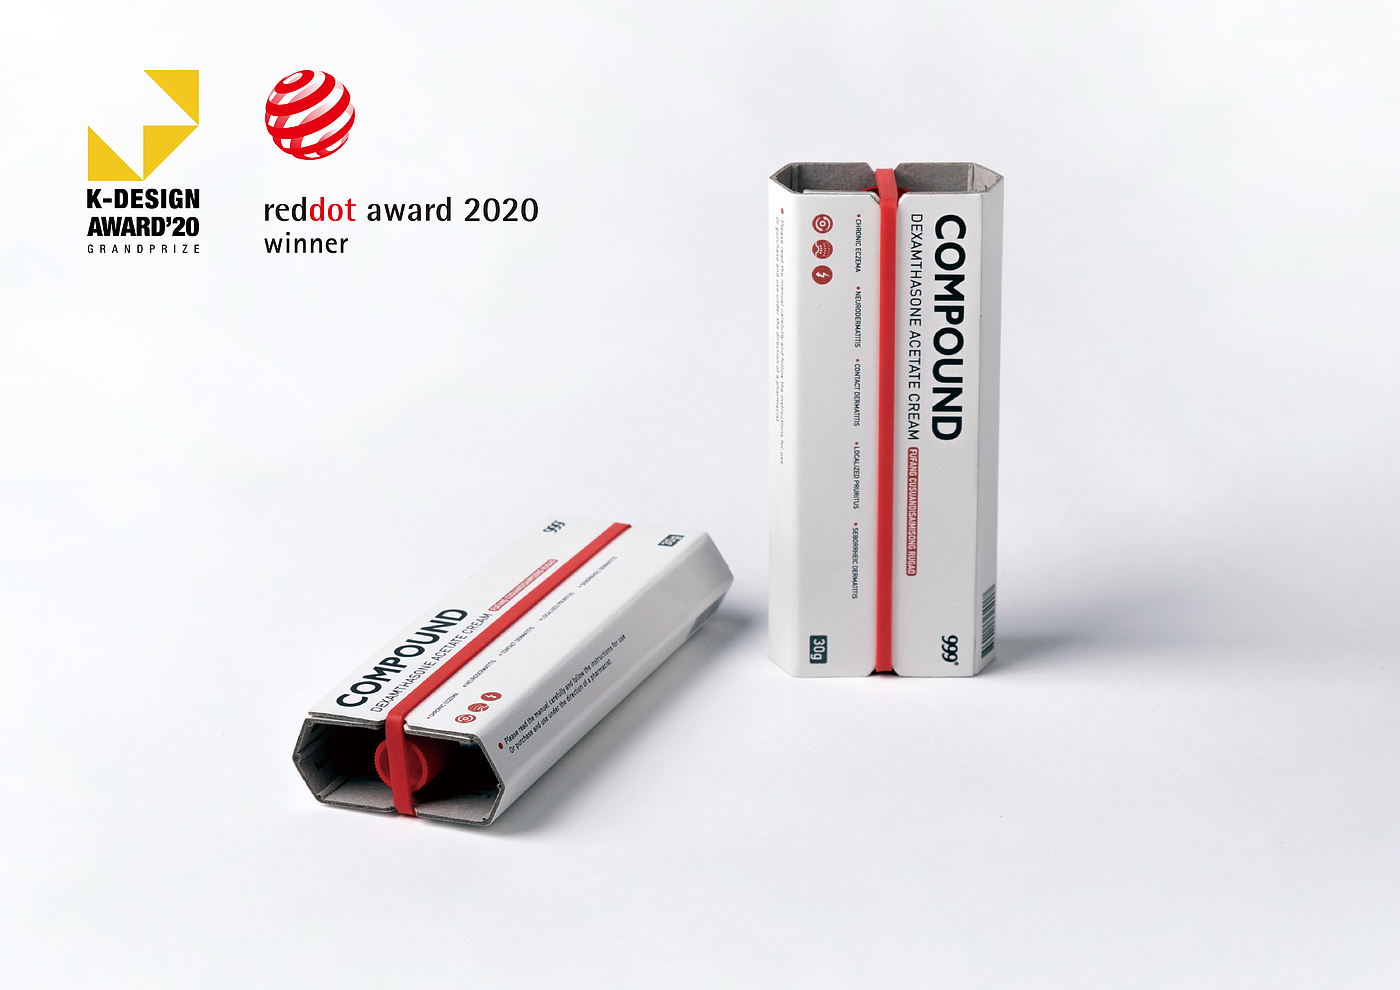 药品包装，K-design设计奖，包装设计，2020年红点概念设计奖，